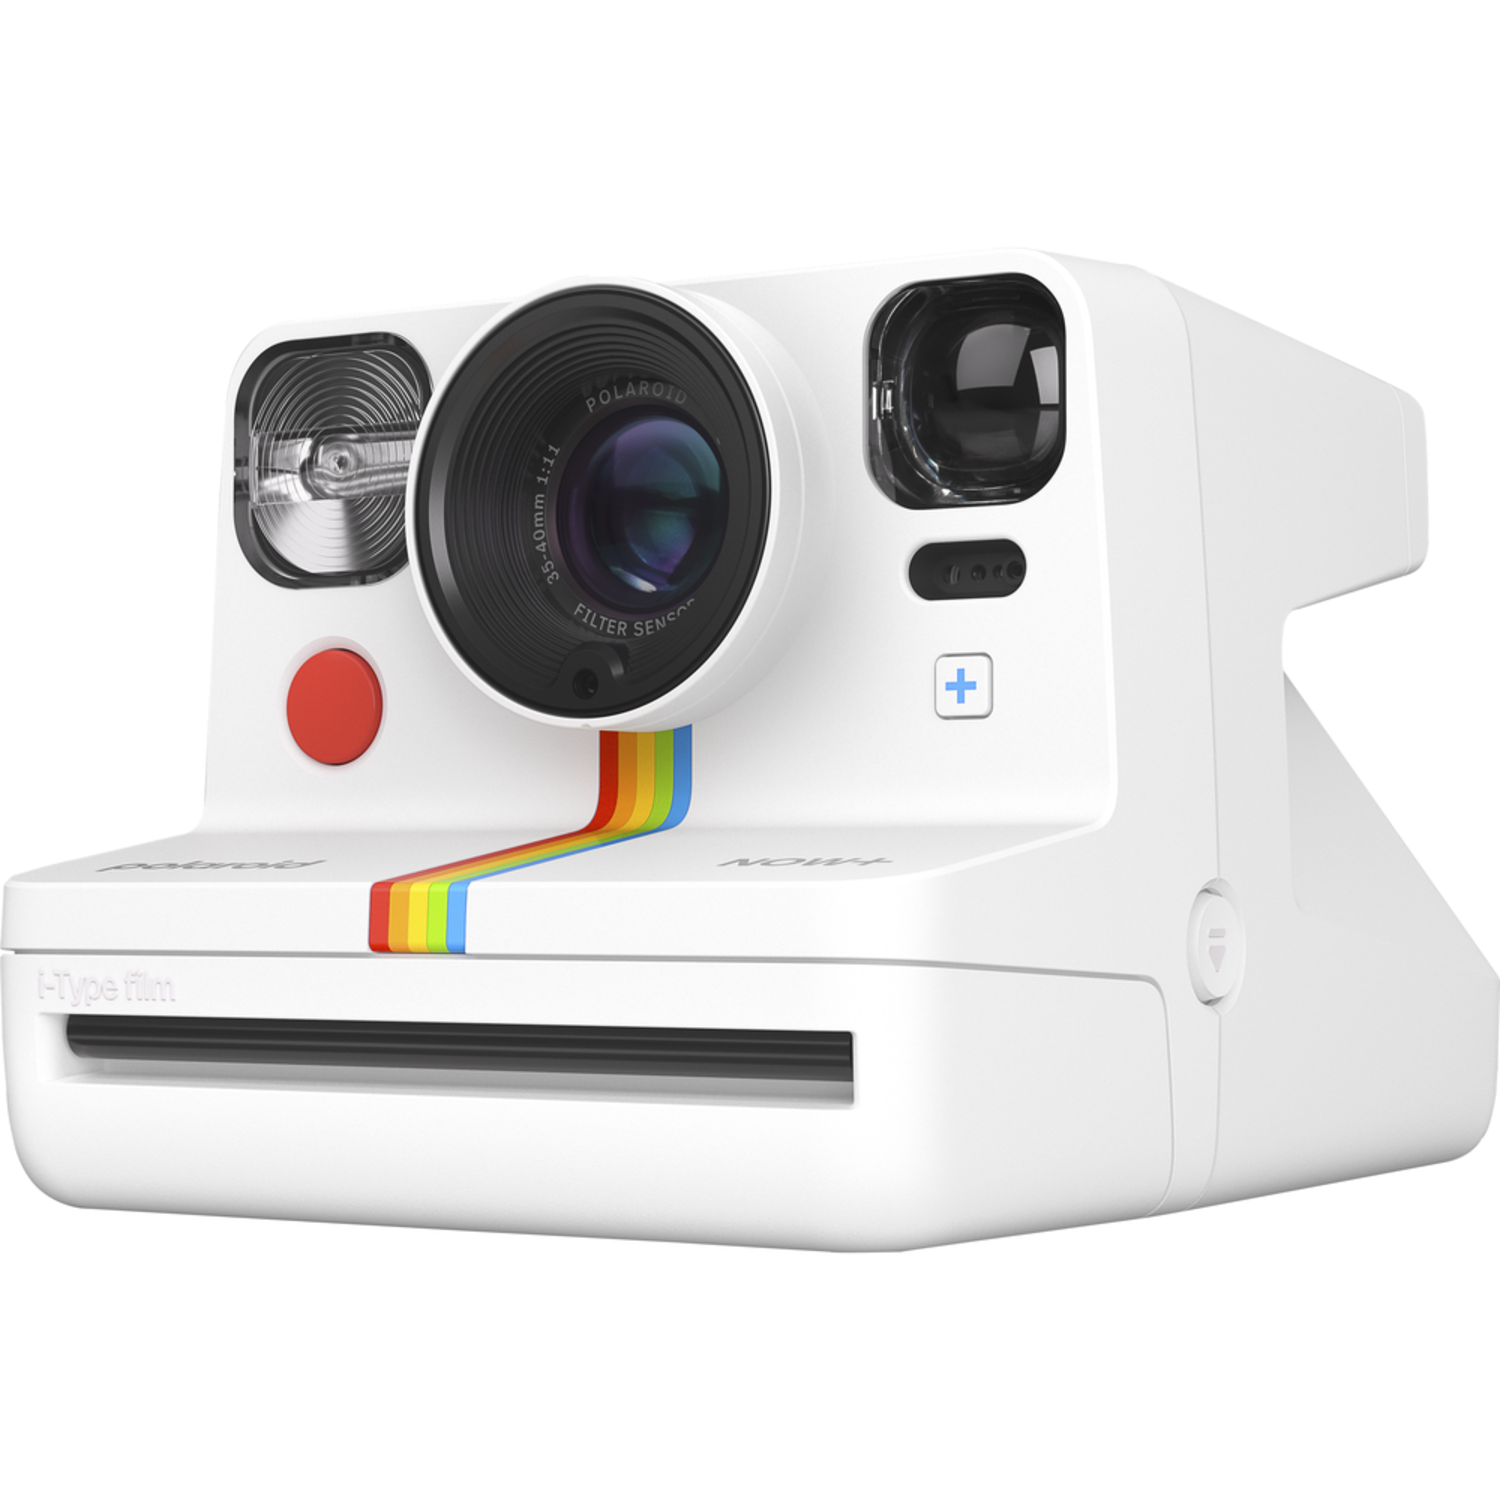 Polaroid Now+ Generation 2 Instant Camera - White - kite+key